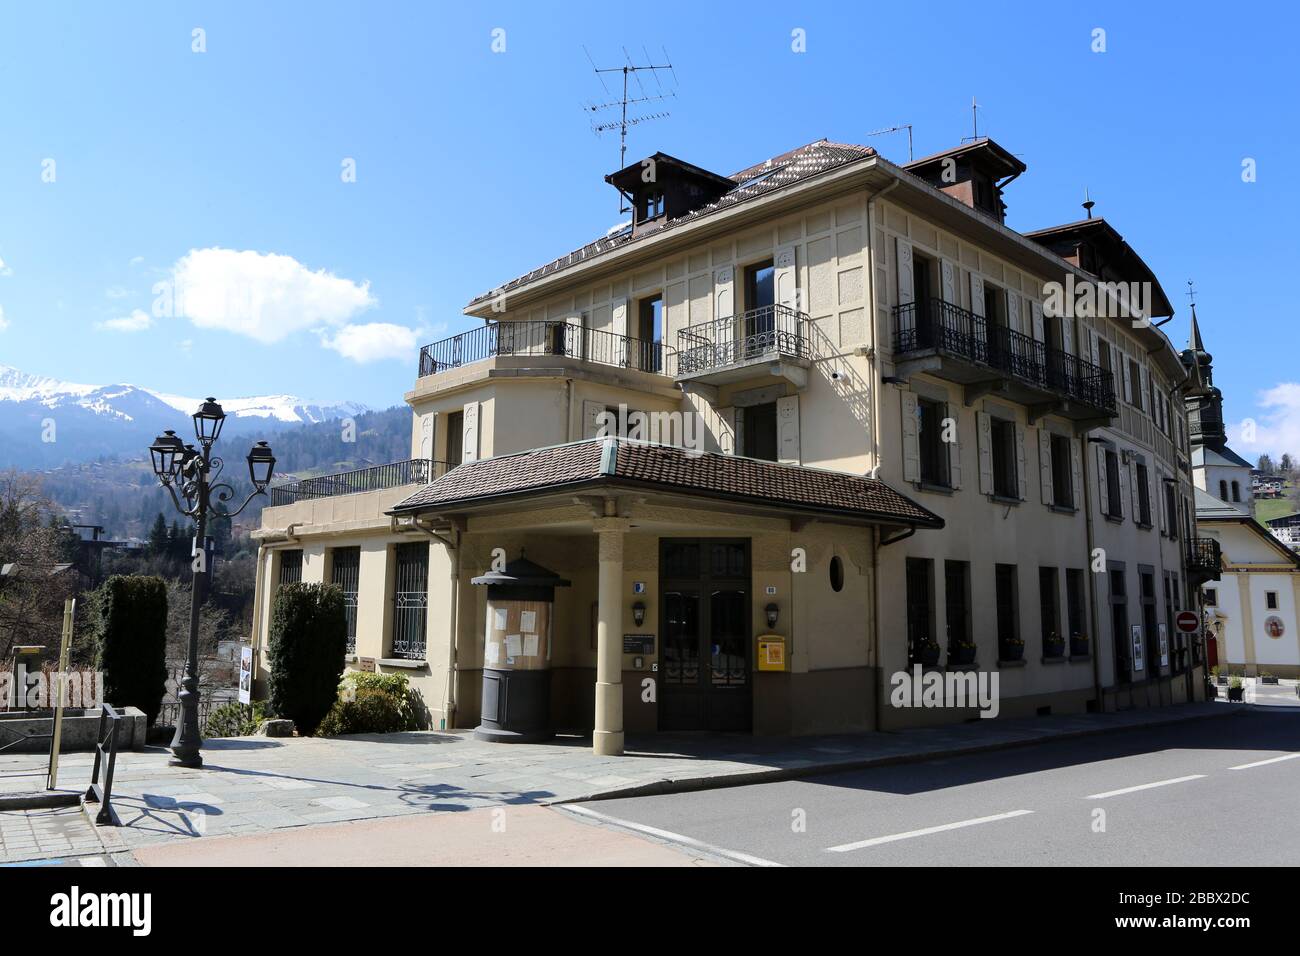 Hôtel de Ville. Saint-Gervais-les-Bains. Haute-Savoie. France. Stock Photo